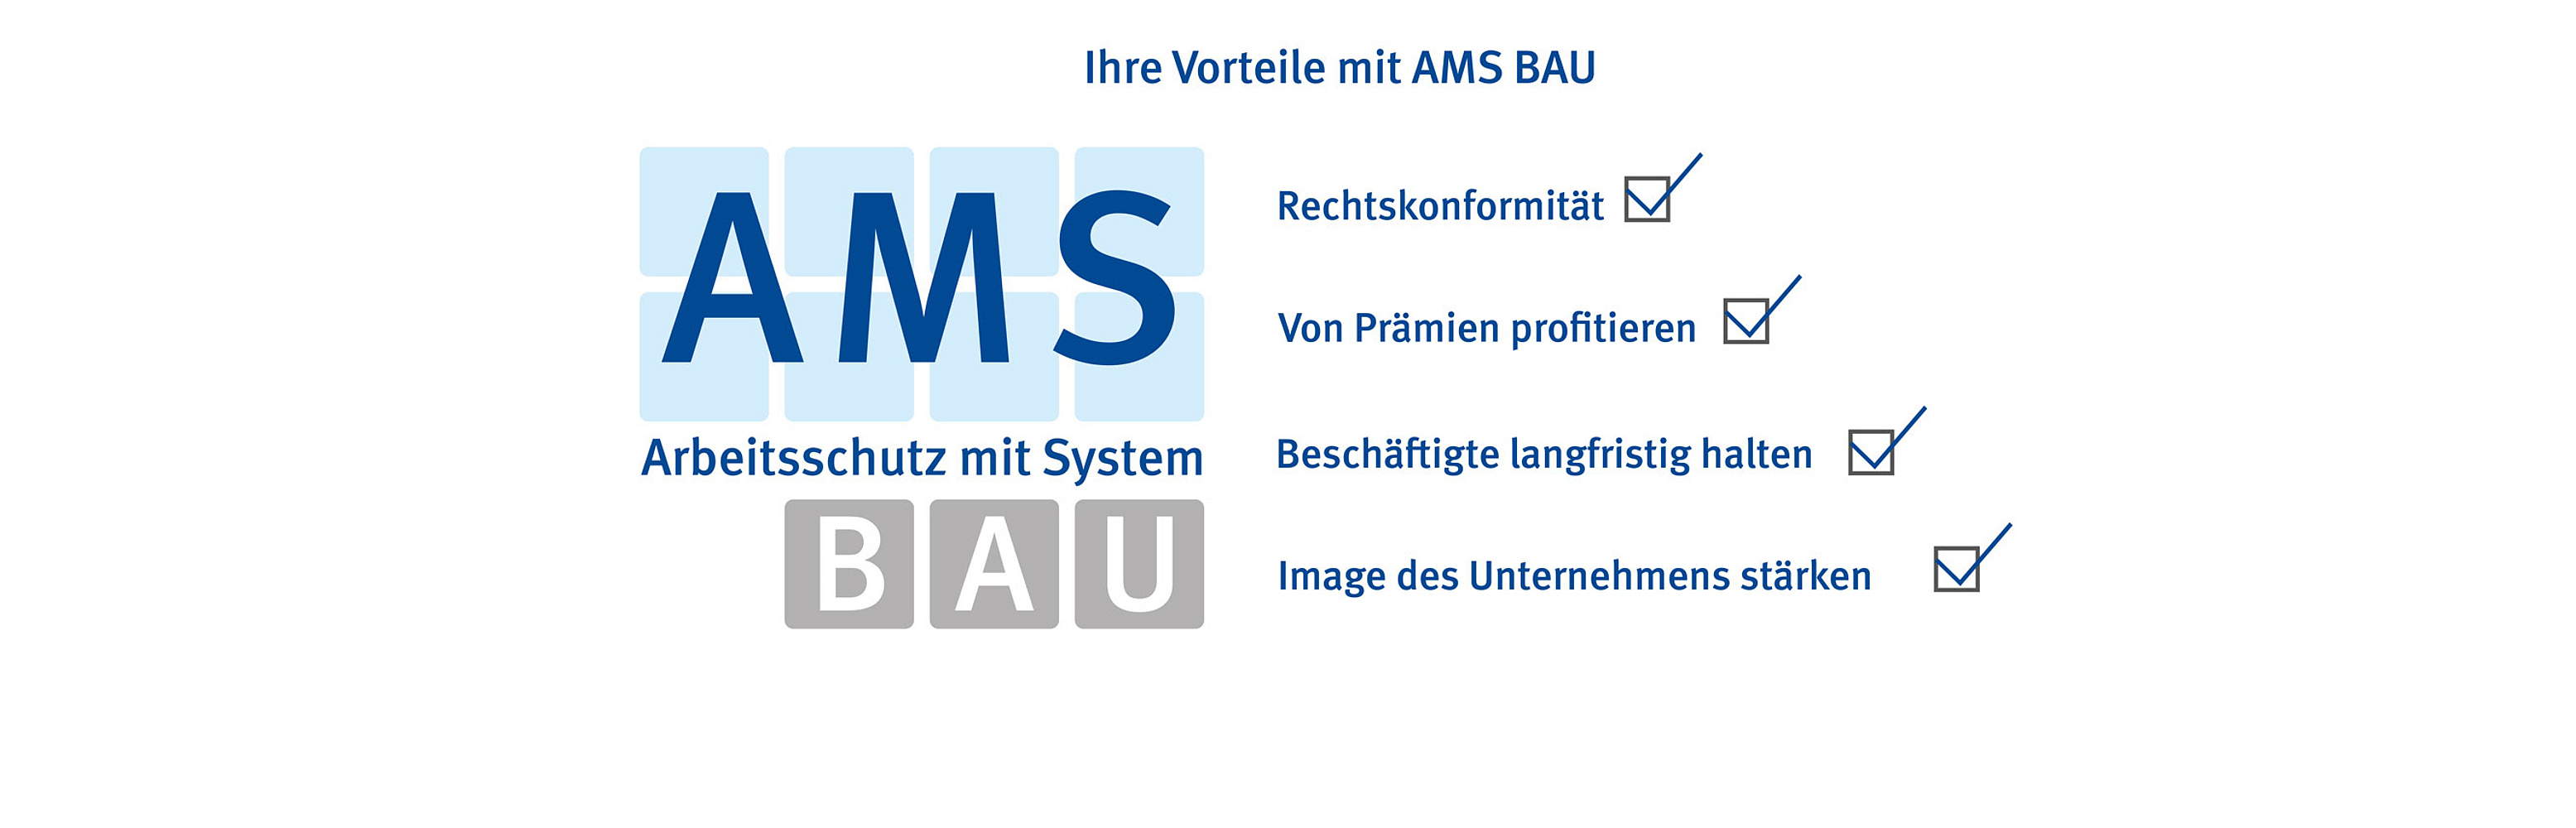 Titelibild AMS BAU-Logo mit den Vorteilen Rechtssicherheit, von Prämien profitieren, Beschäftigte langfristig halten, Image des Unternehmens stärken